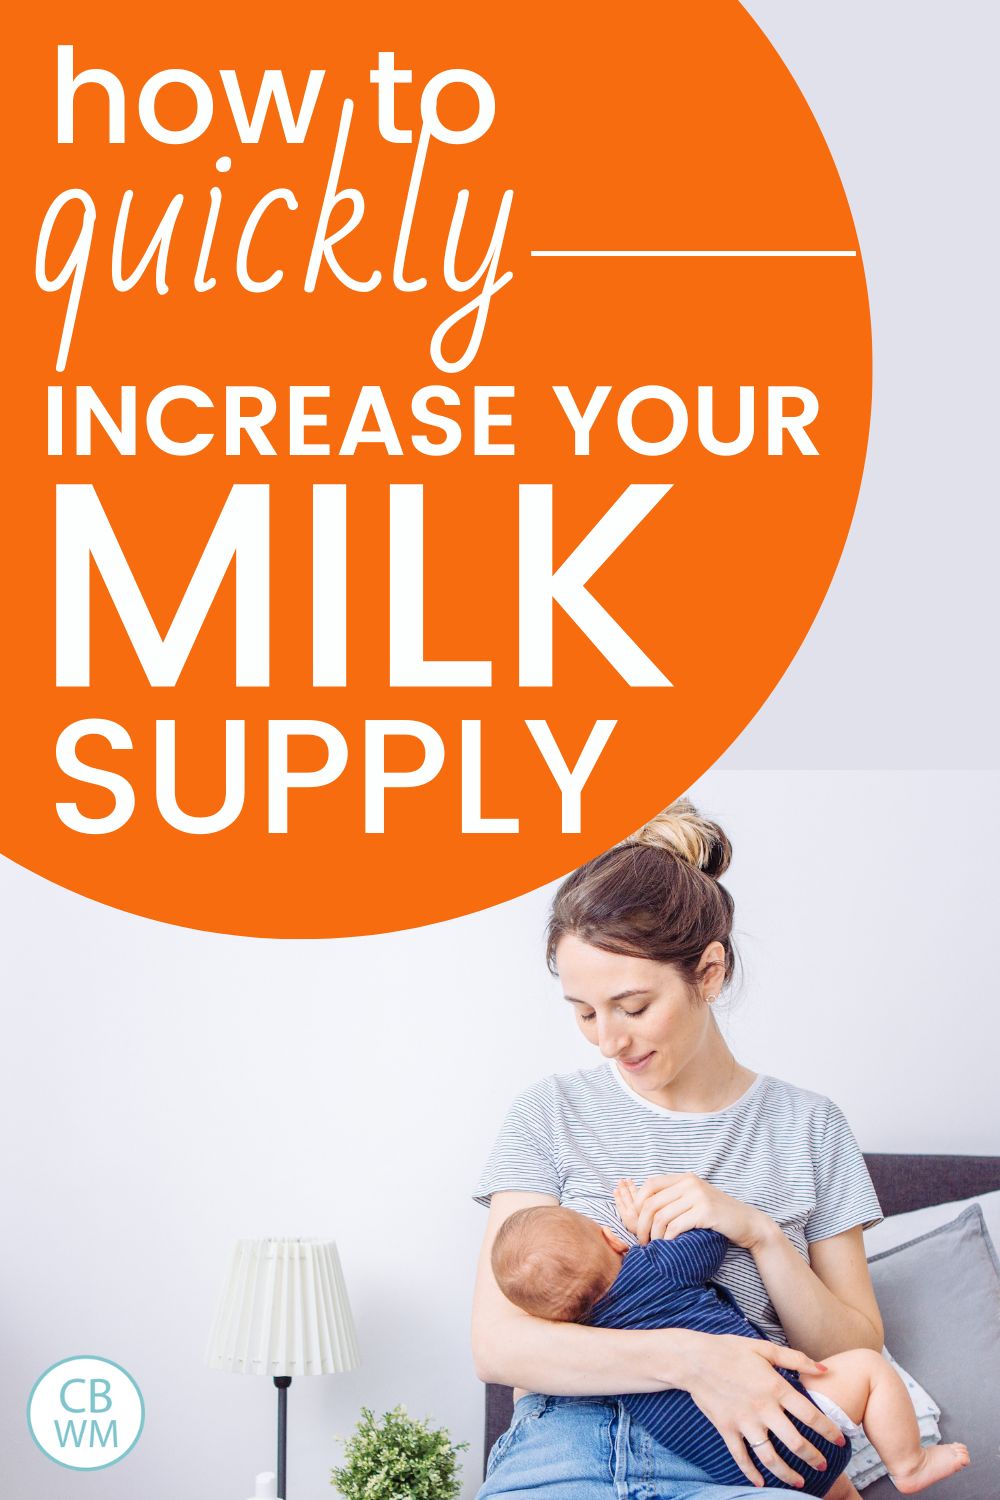 increase milk supply pinnable image